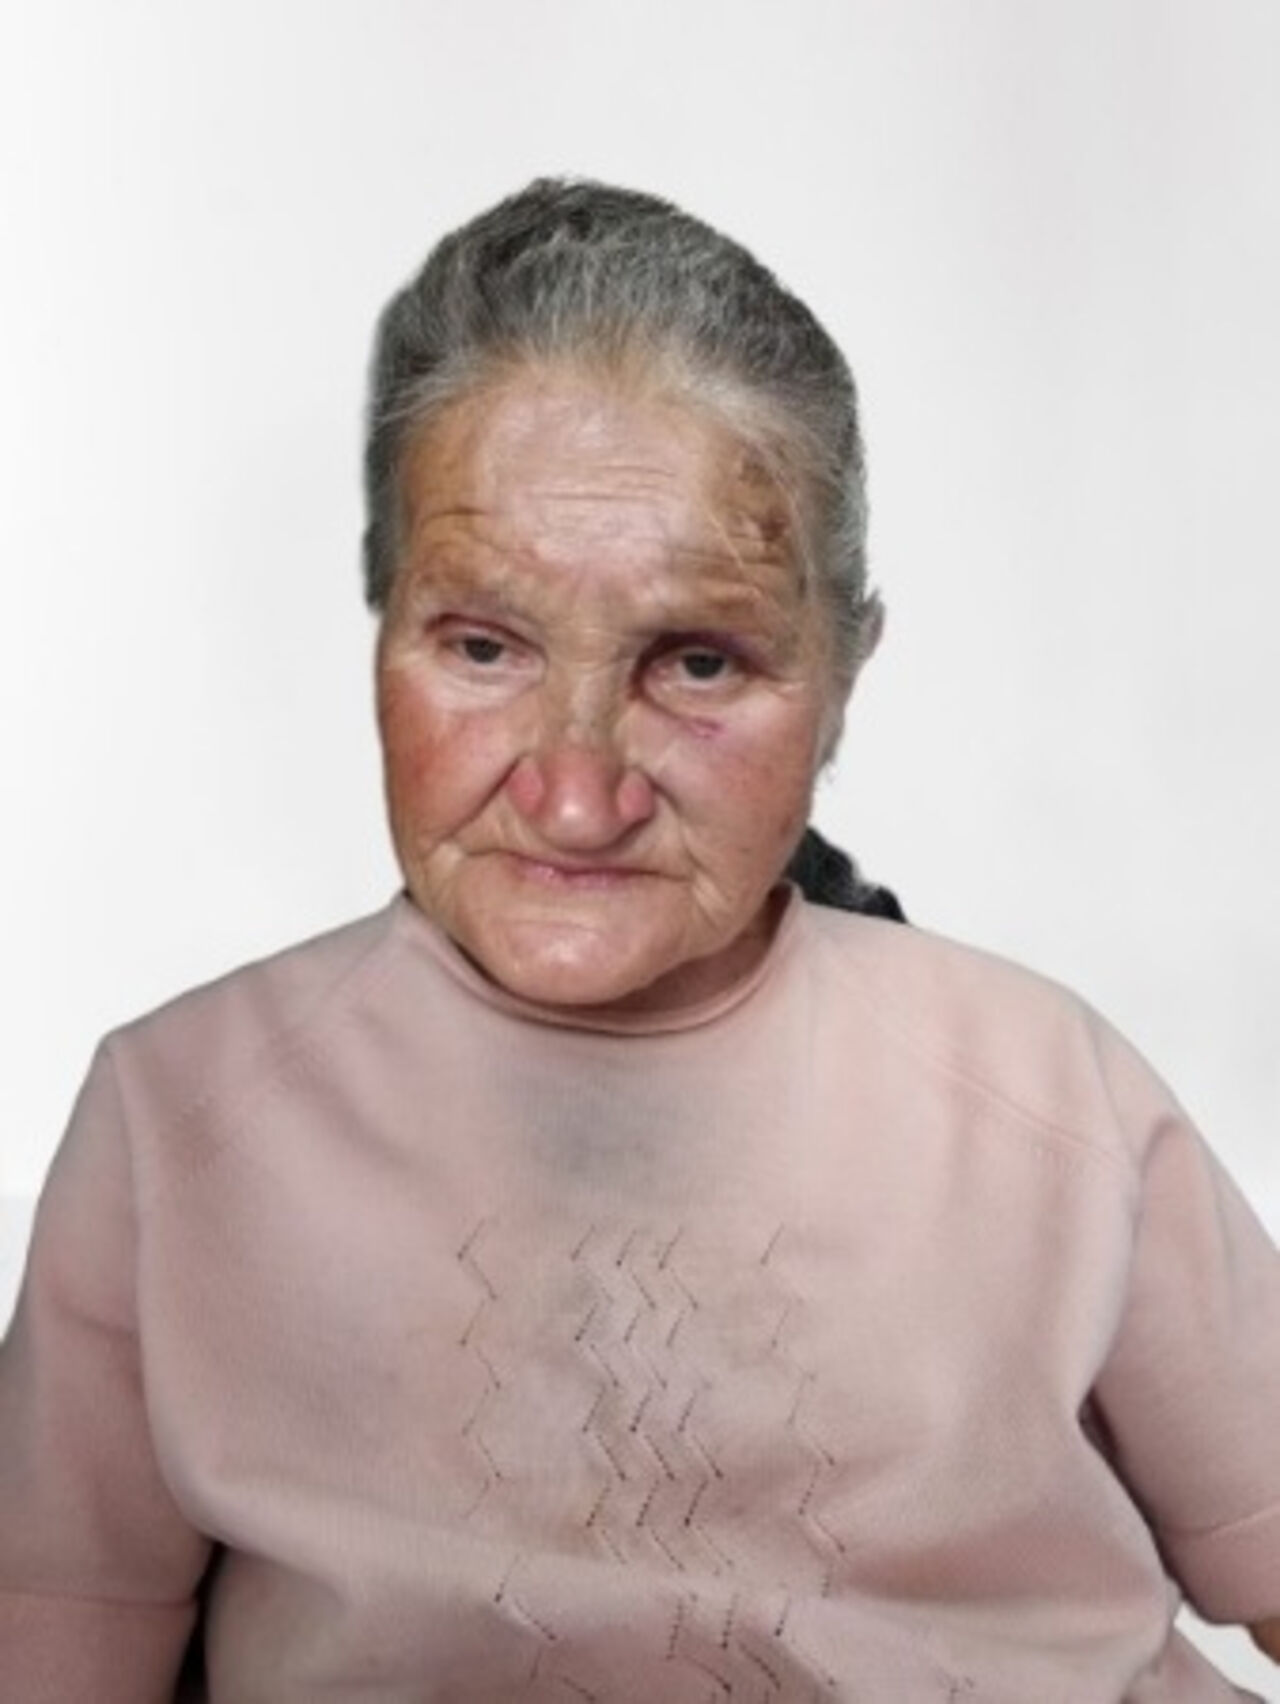 Нашлась пожилая женщина. Женщина 79 лет. Пропавшие женщины пенсионеры. Пожилая женщина из МГУ.